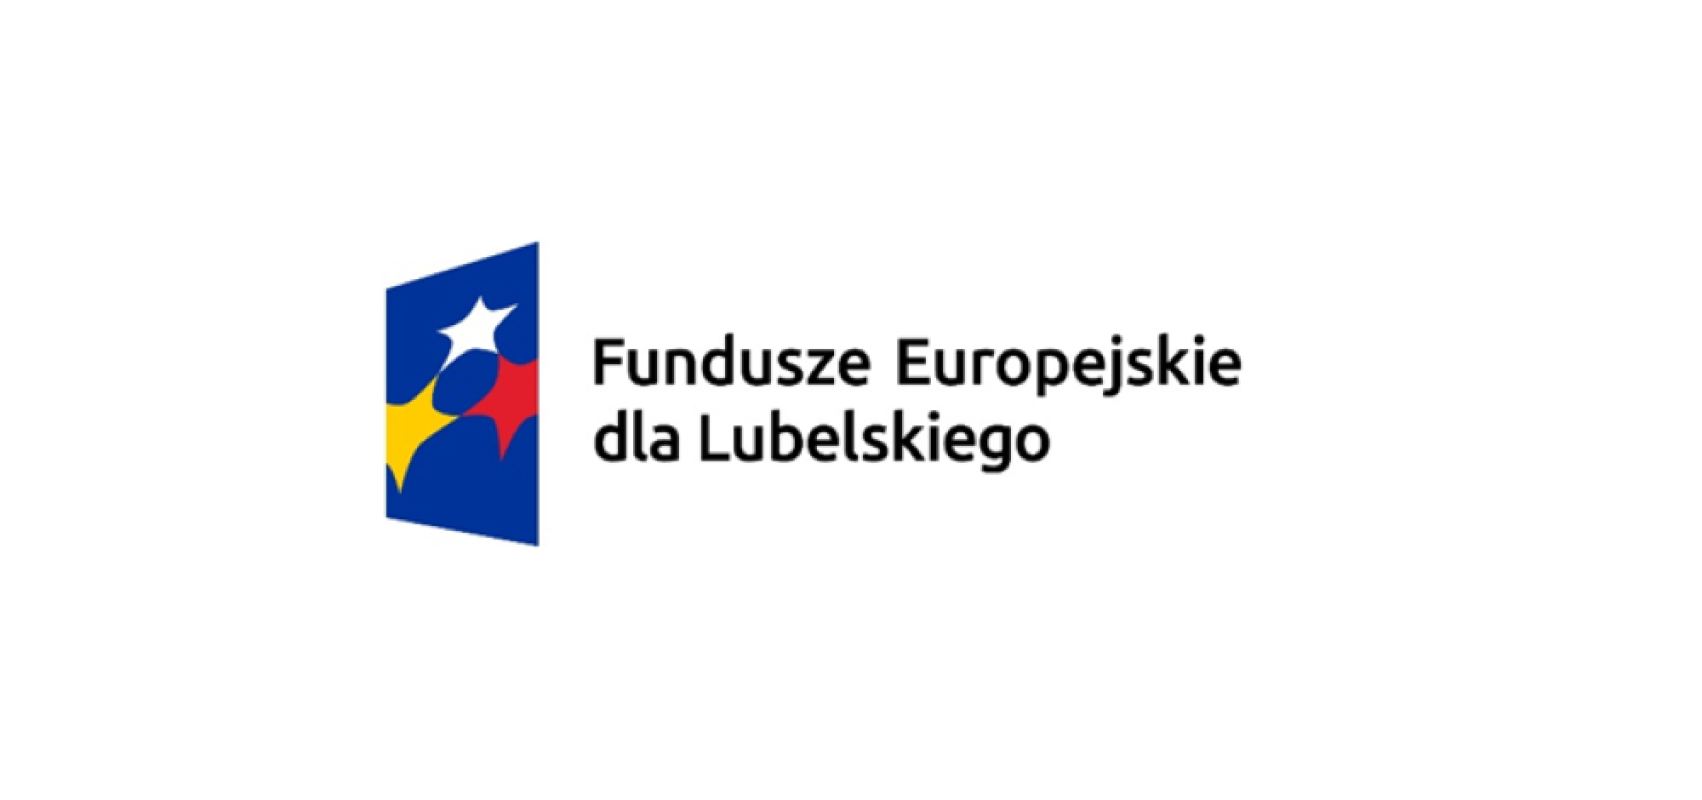 Nabór ekspertów programu Fundusze Europejskie dla Lubelskiego 2021-2027 w zakresie dziedzin i specjalizacji Europejskiego Funduszu Rozwoju Regionalnego (EFRR) oraz Europejskiego Funduszu Społecznego Plus (EFS+)